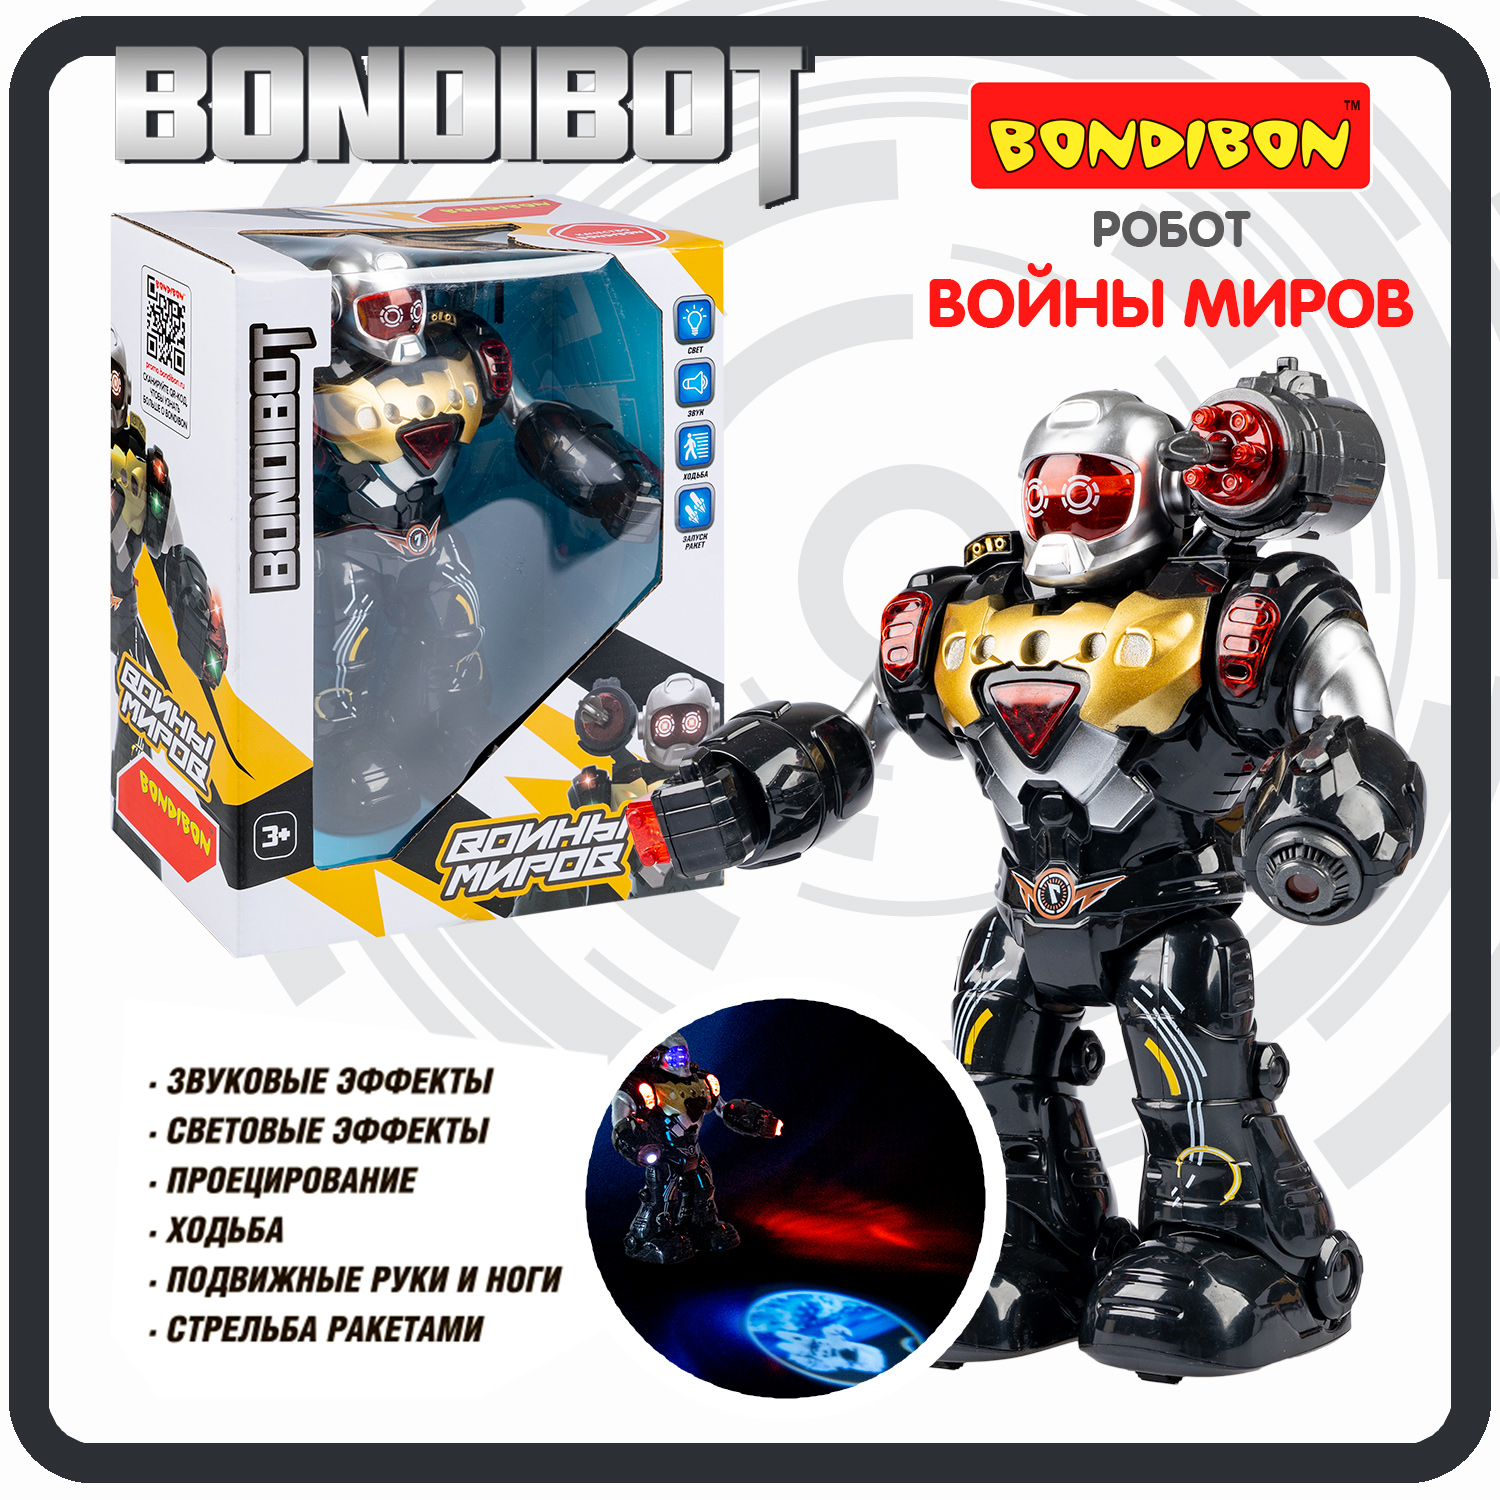 Робот ВОИНЫ МИРОВ, BONDIBOT Bondibon , свет, звук, движение, стрельба / ВВ6181